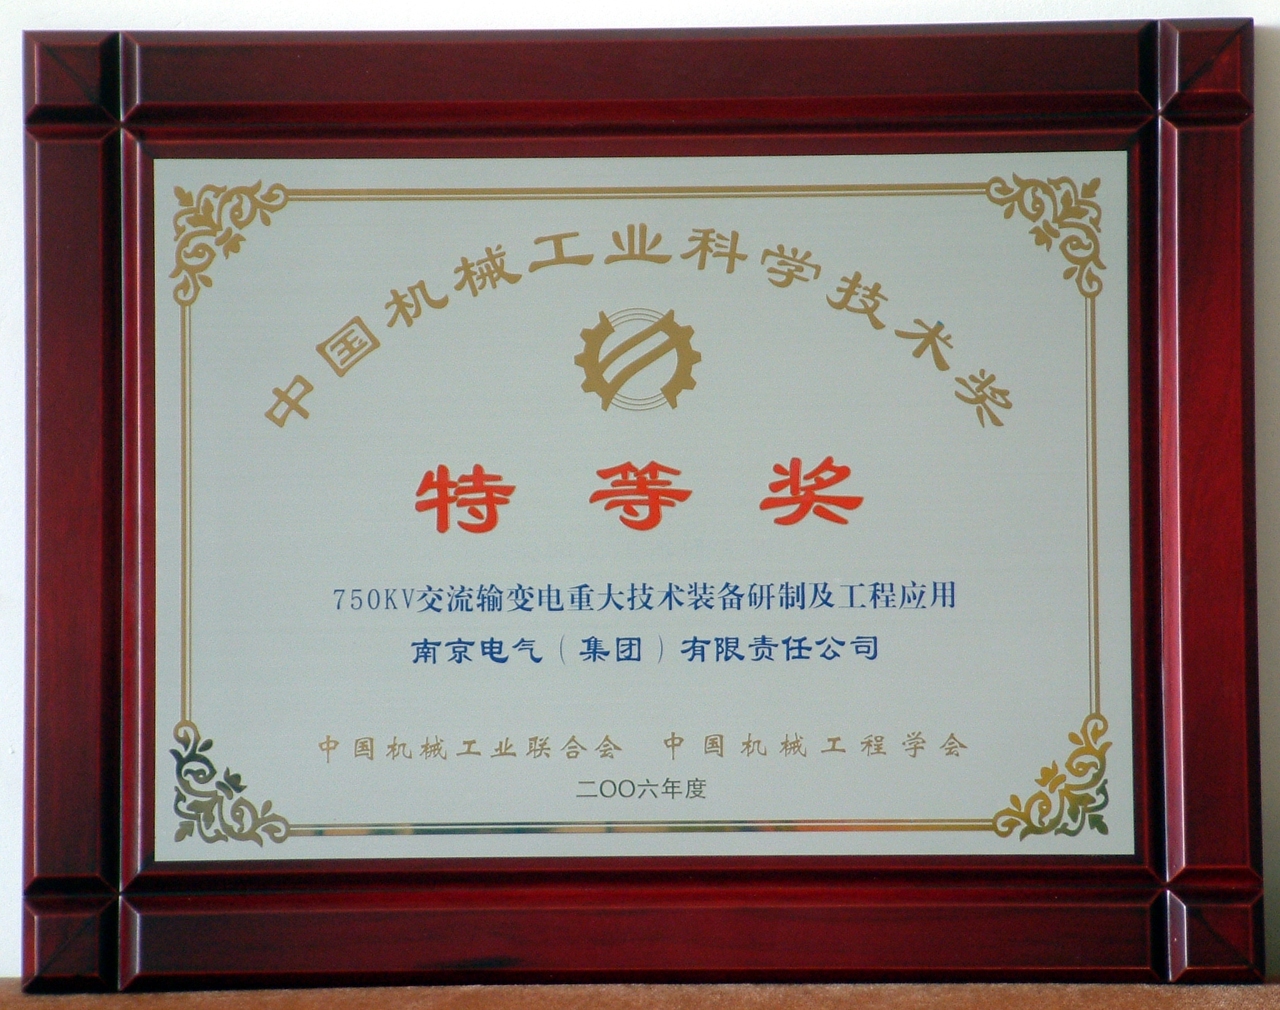 2006年750kV变压器套管研制项目荣获中国机械工业科学技术特等奖